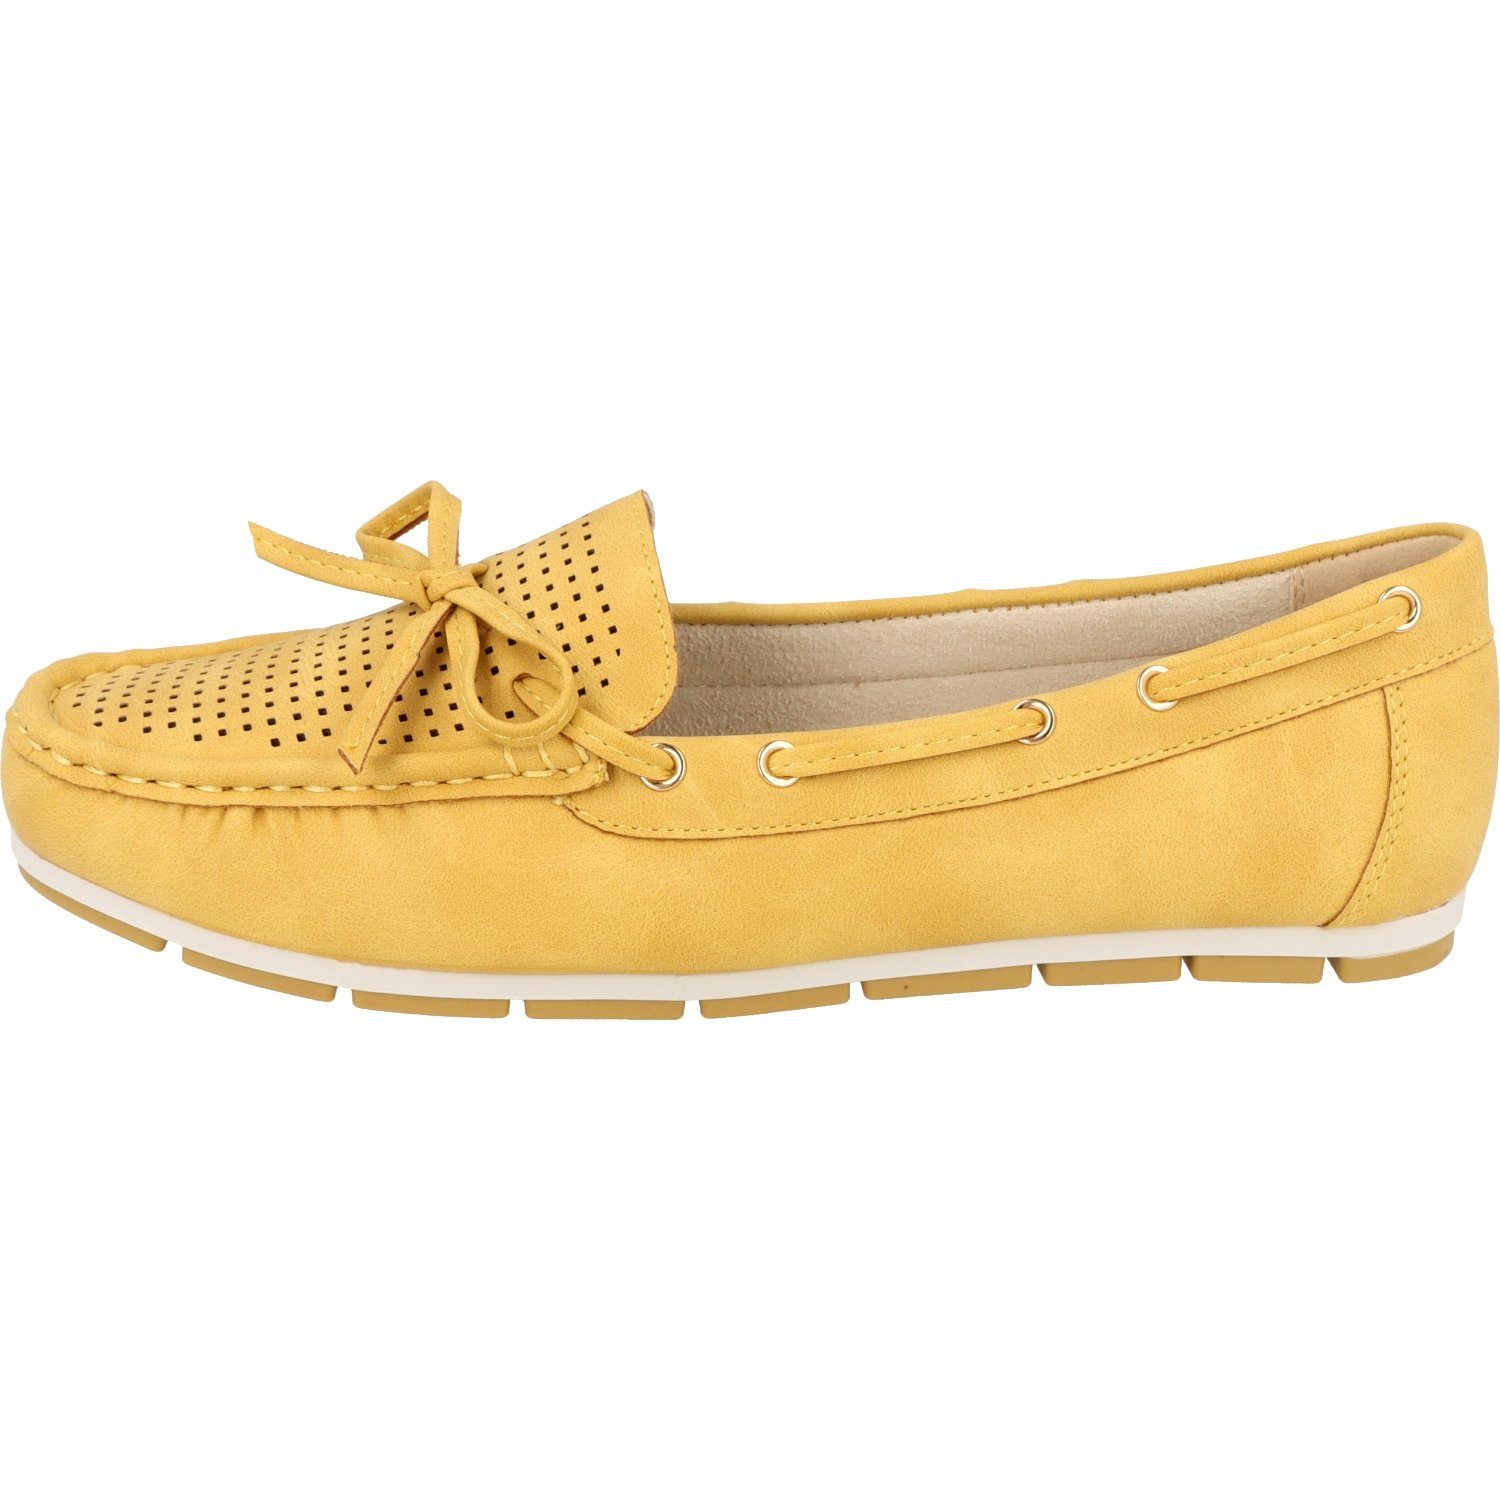 Damen 242-646 Schleife Sommer Schuhe Jane Klain Komfort Yellow Slipper Mokassin